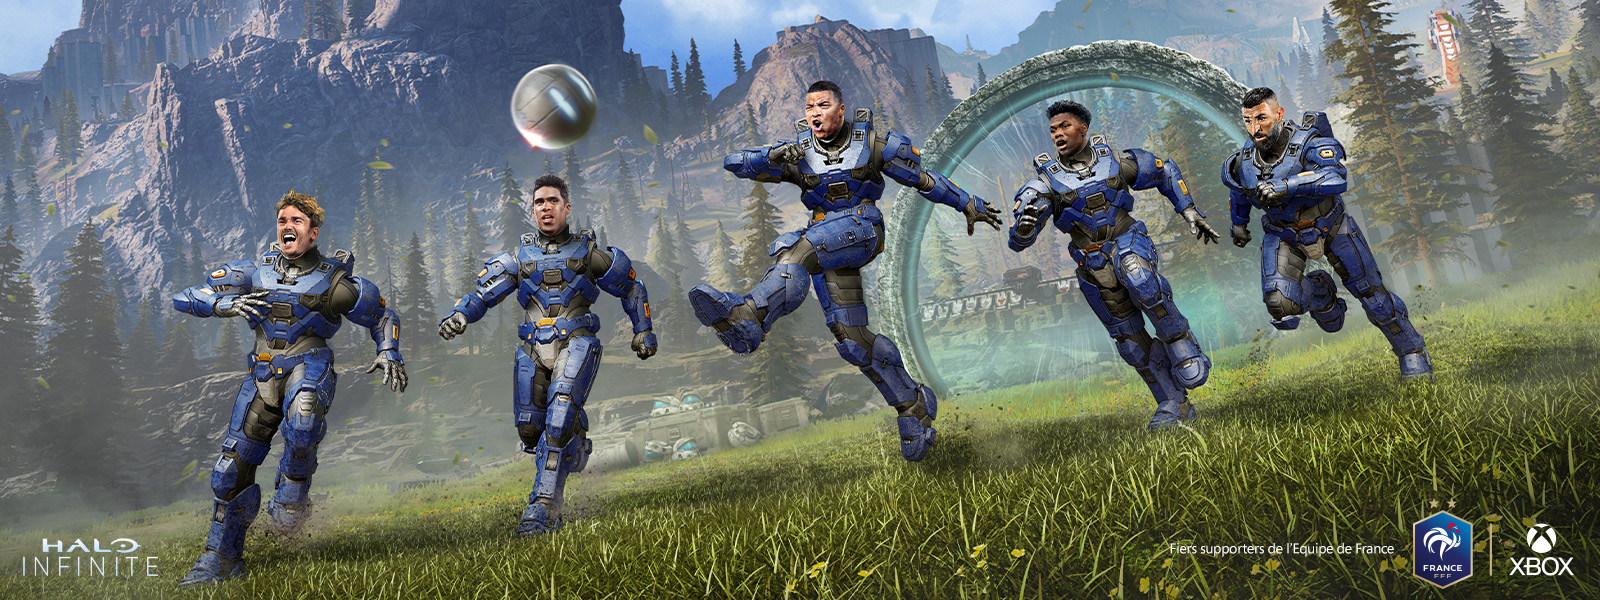 Plusieurs joueurs de l'équipe de France de football, équipés en Armure de Spartan, tapent dans un ballon sur l'anneau de Halo Infinite. Les logos FFF et Xbox sont visibles en bas à droite de l'image, et le logo Halo Infinite, en bas à gauche